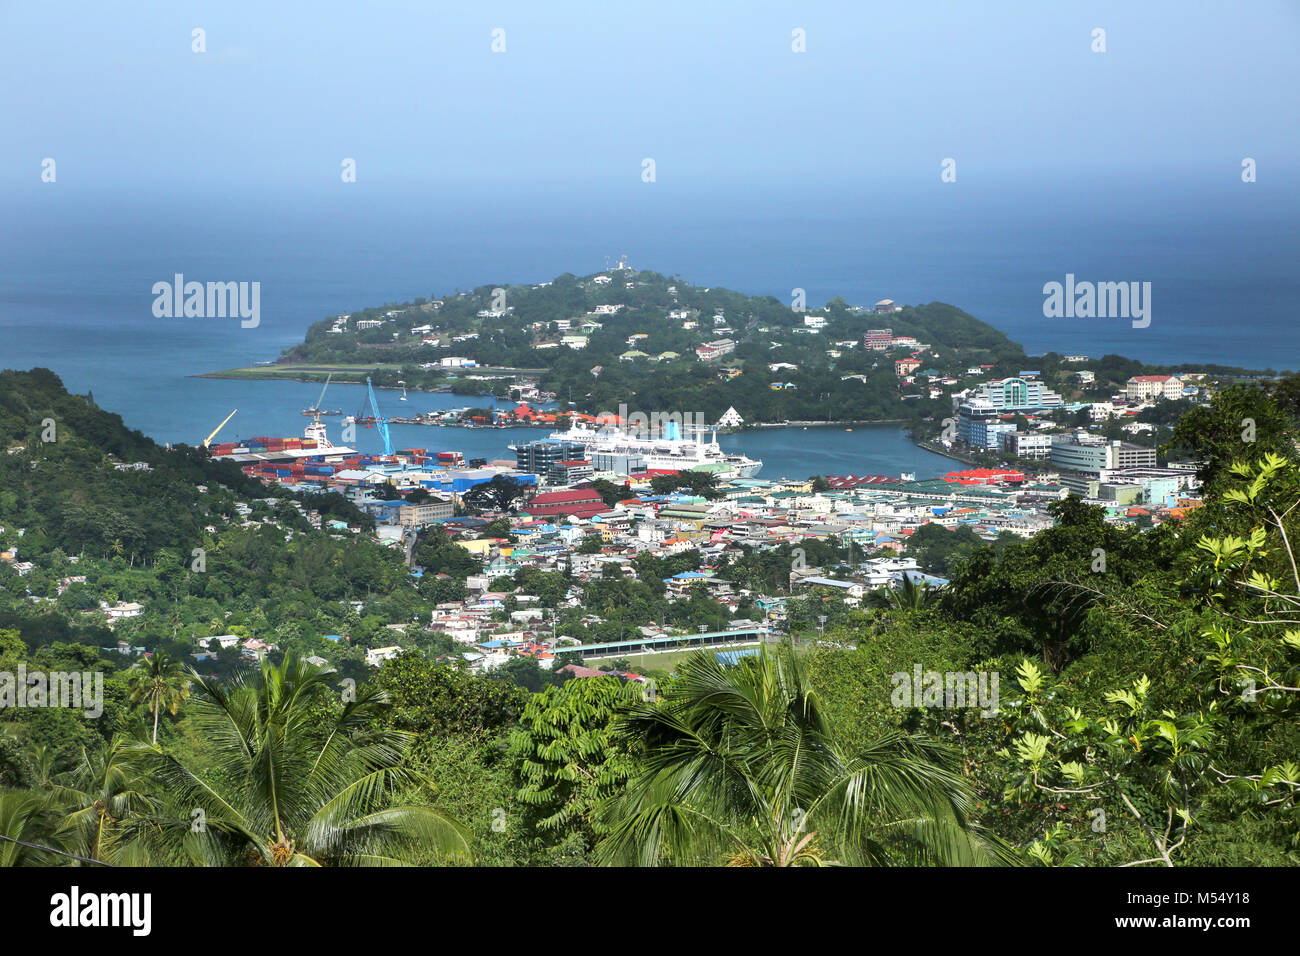 Dans la vallée en direction de la ville de Castries, St Lucia. Montre la ville et le port avec un bateau de croisière amarré. Banque D'Images